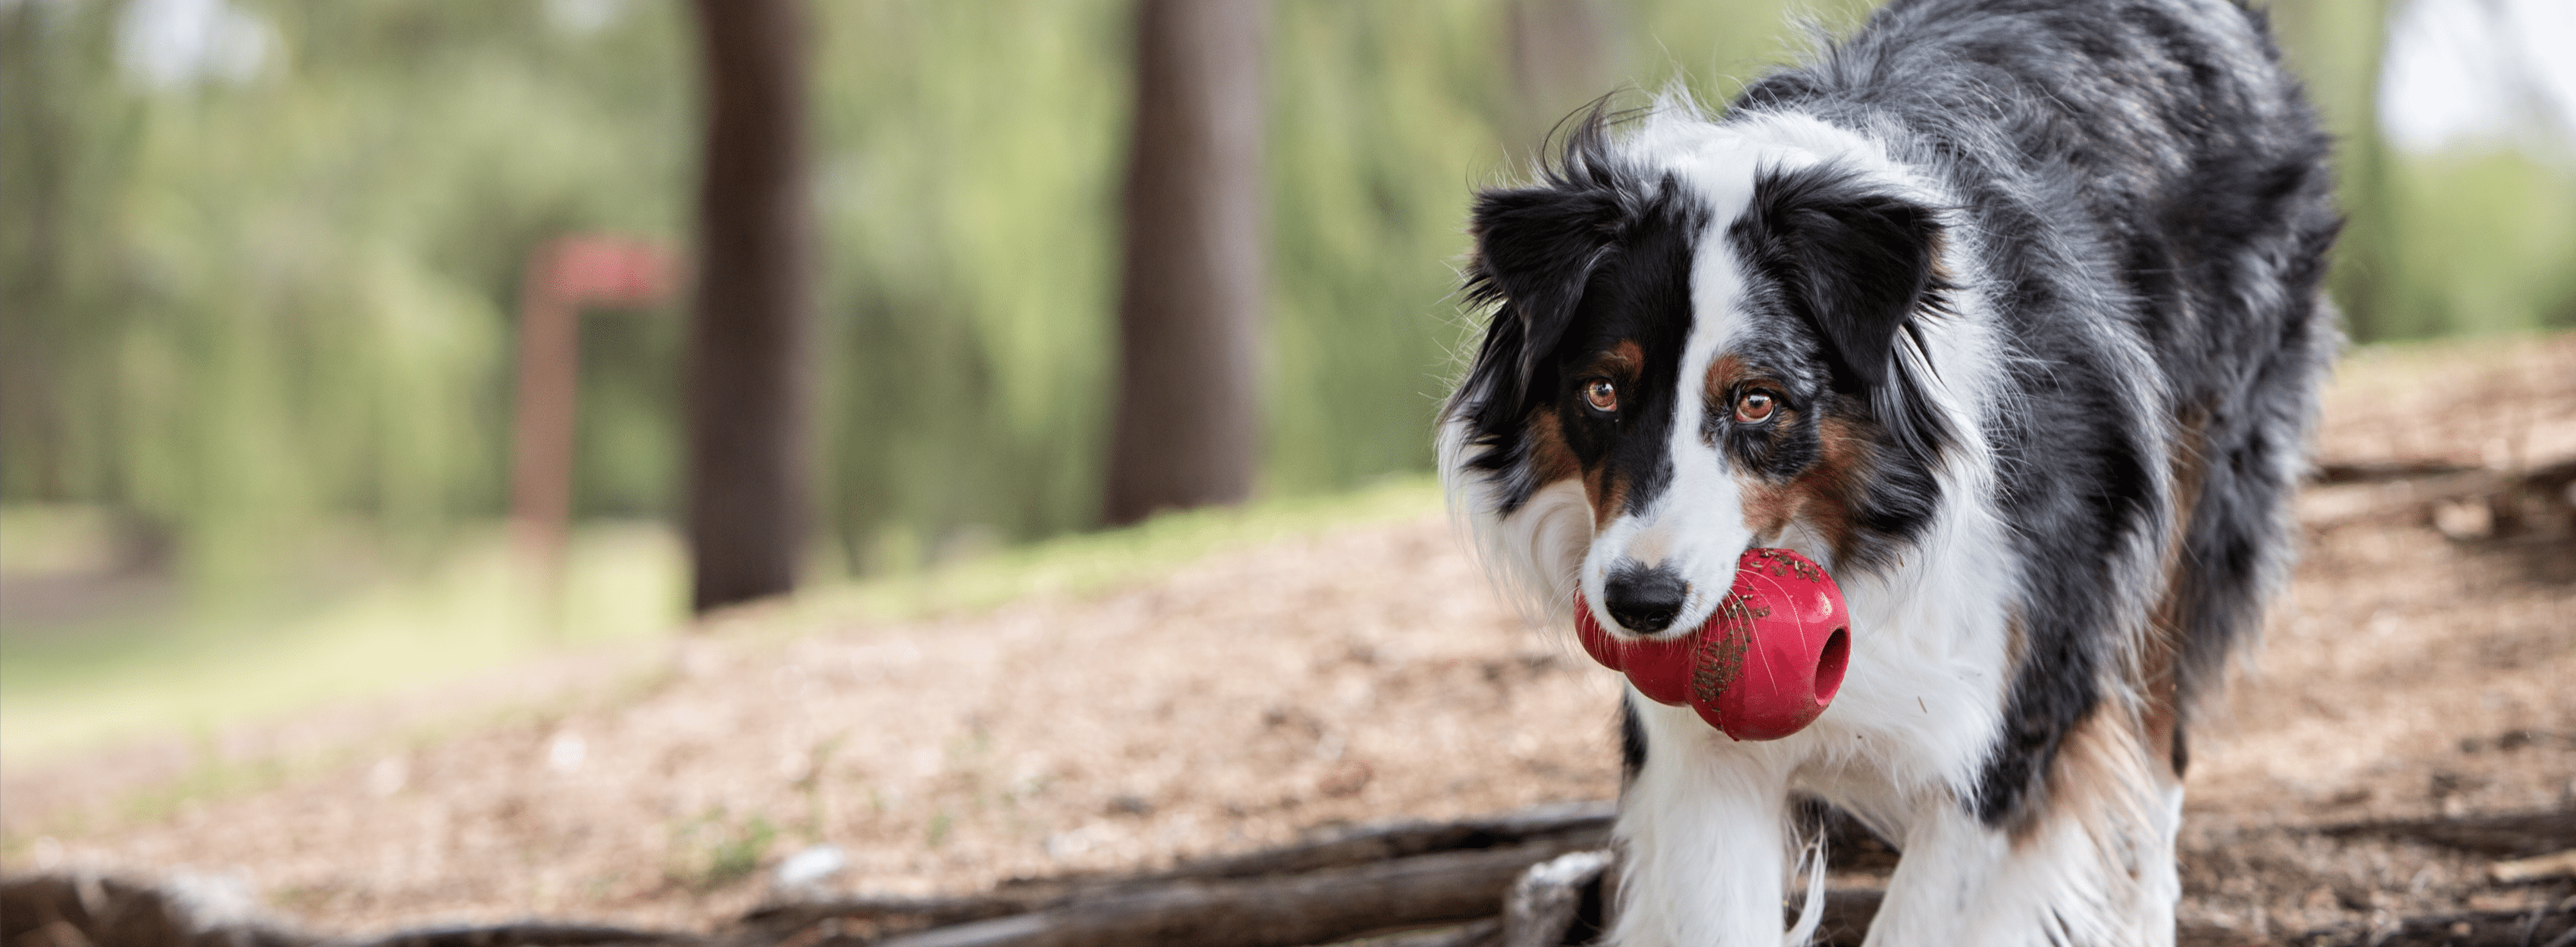 KONG vermelho na boca do cão cinzento, castanho e branco